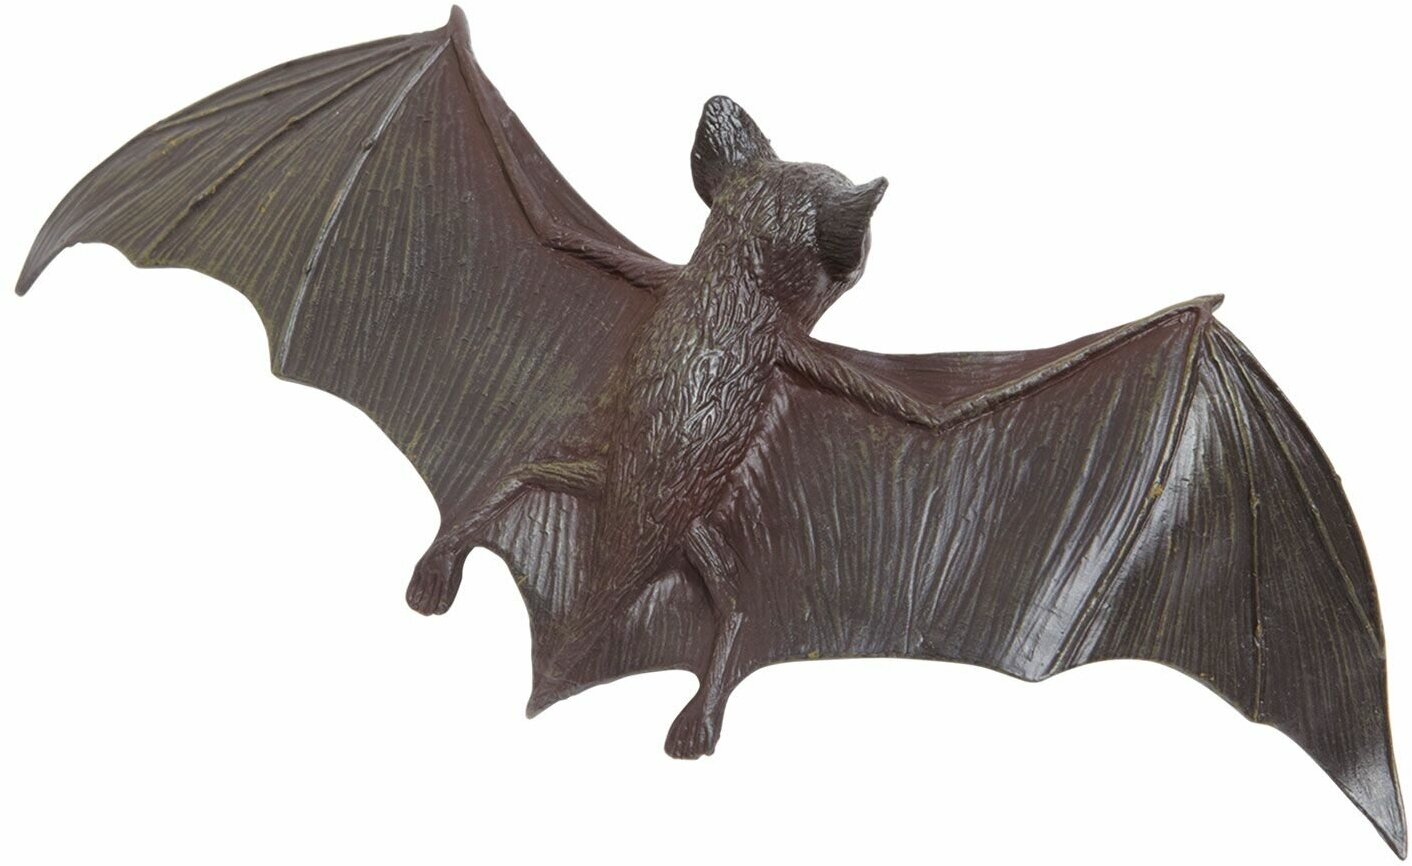 Фигурка животного Safari Ltd Летучая мышь XL, для детей, игрушка коллекционная, 260629